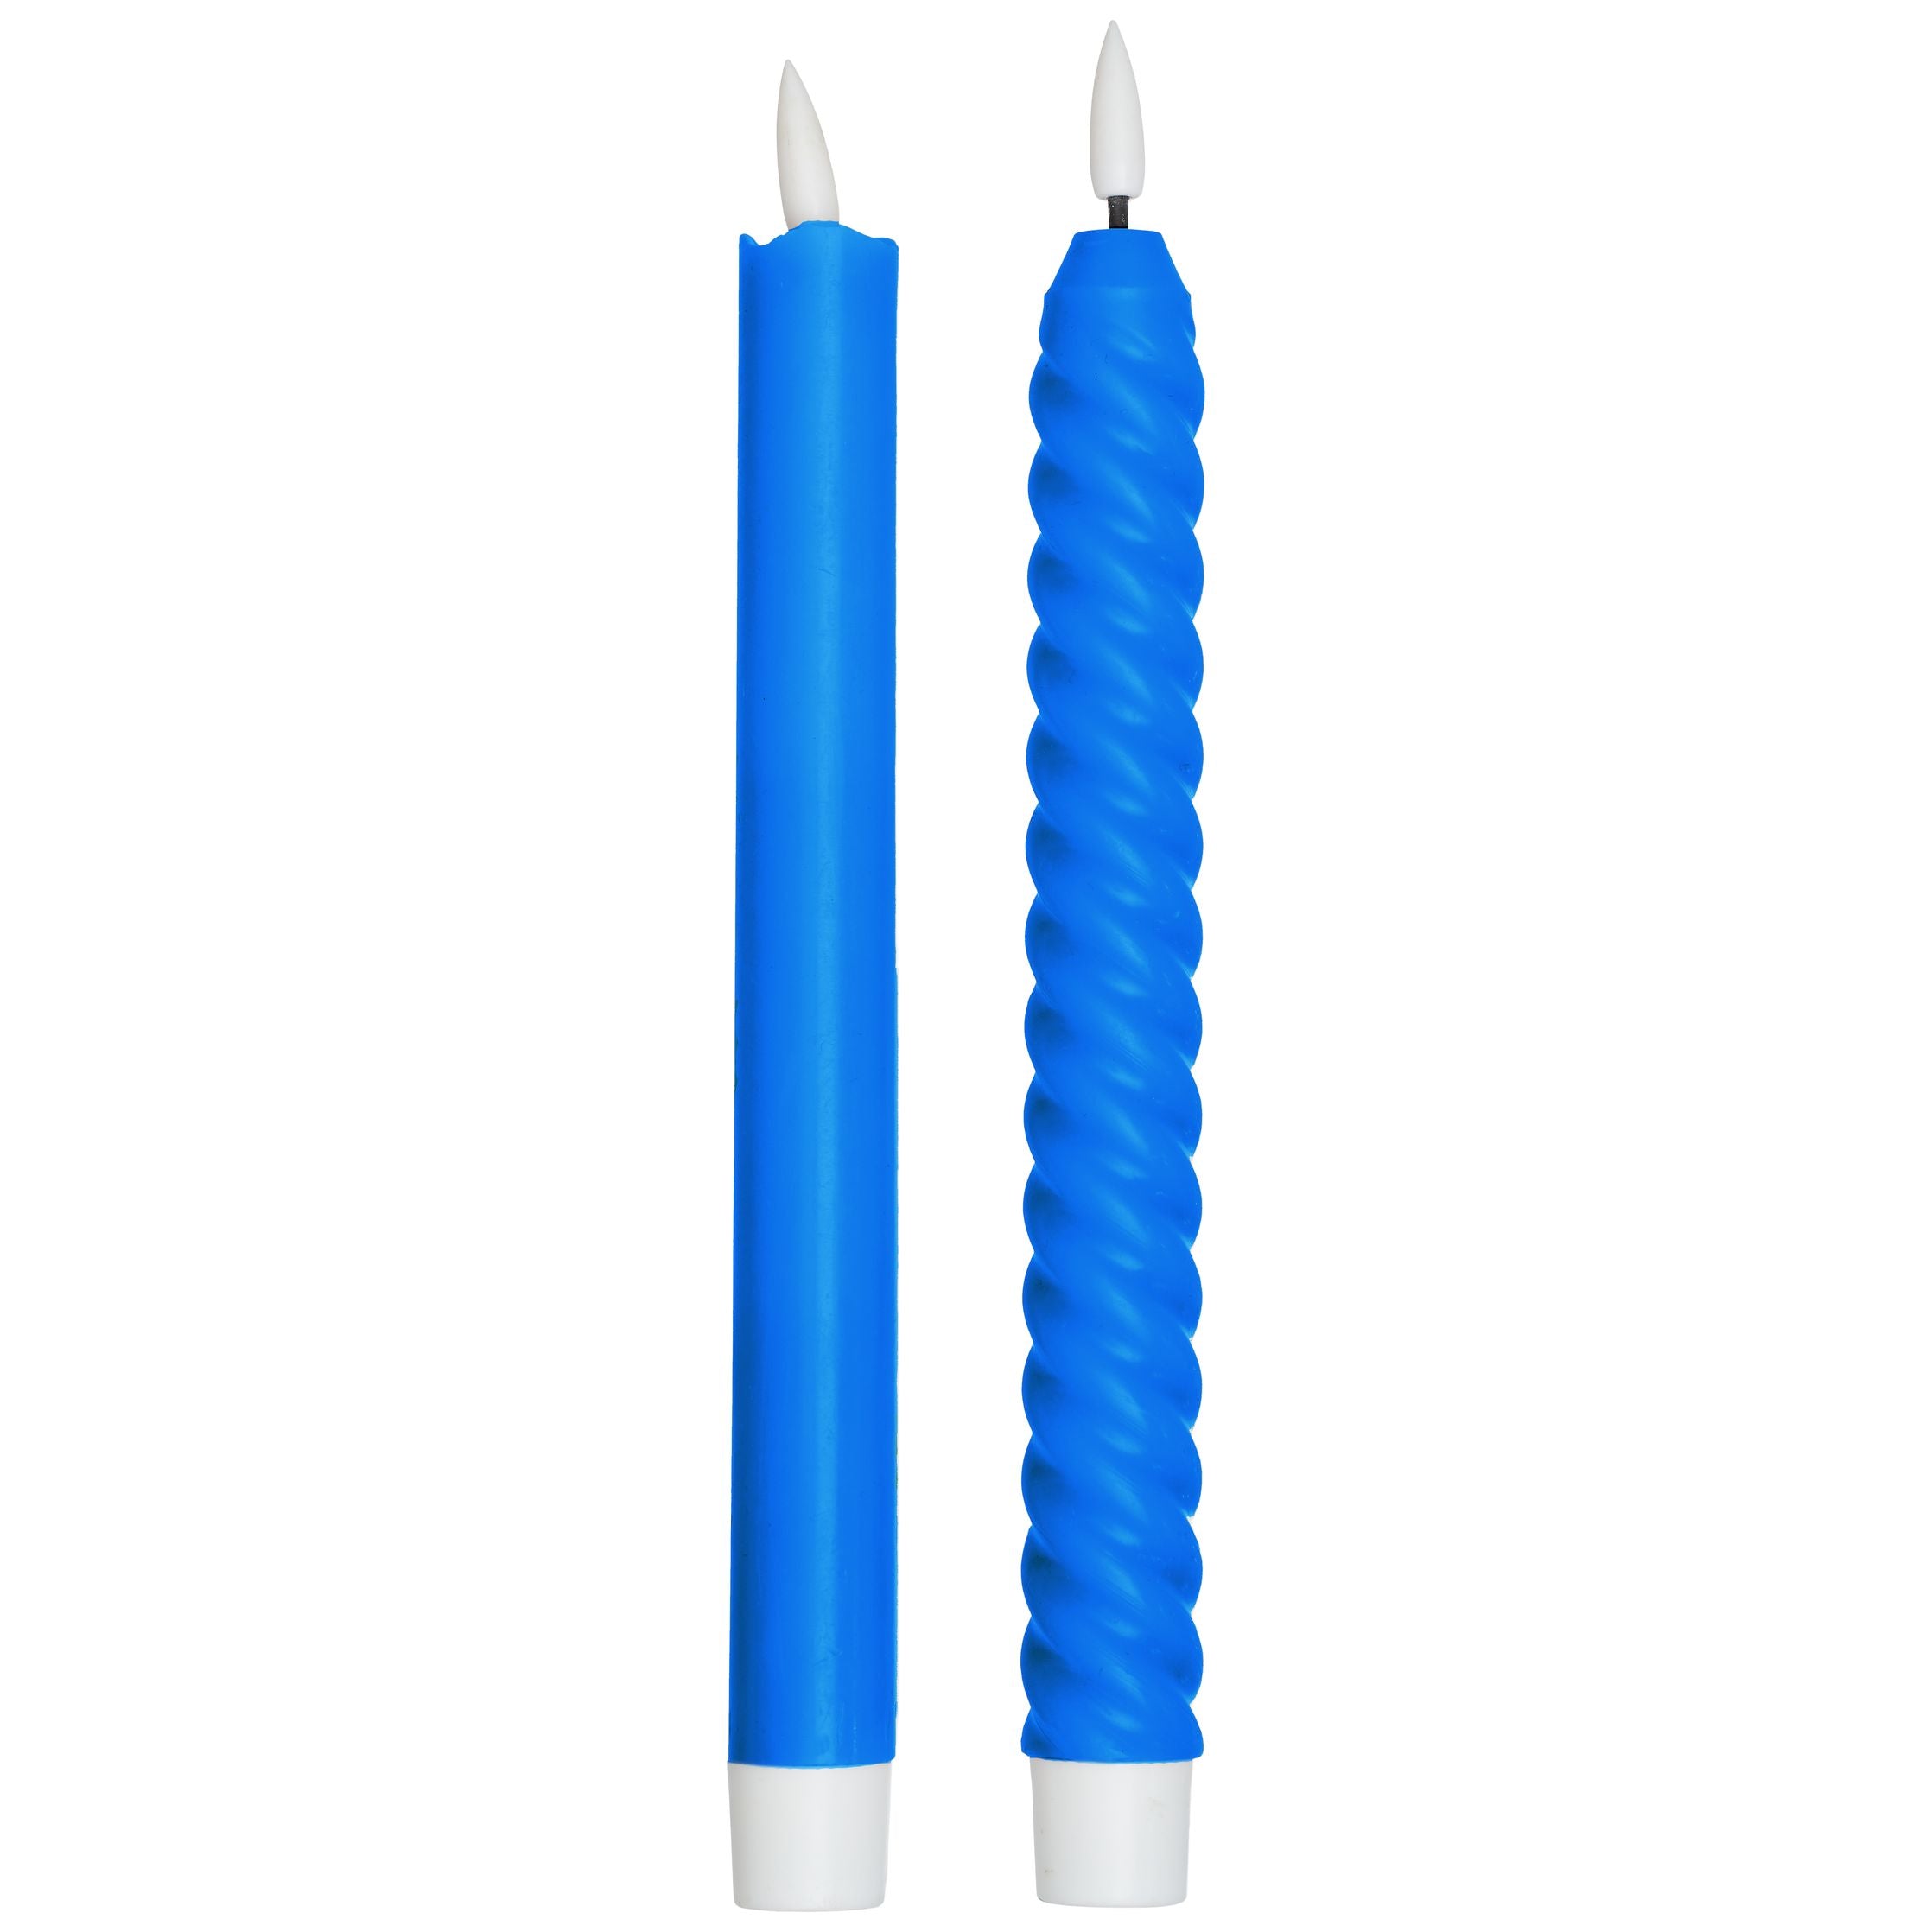 Lettres de conception bougies confortables à LED (ensemble de 2 pcs), bleu cobalt